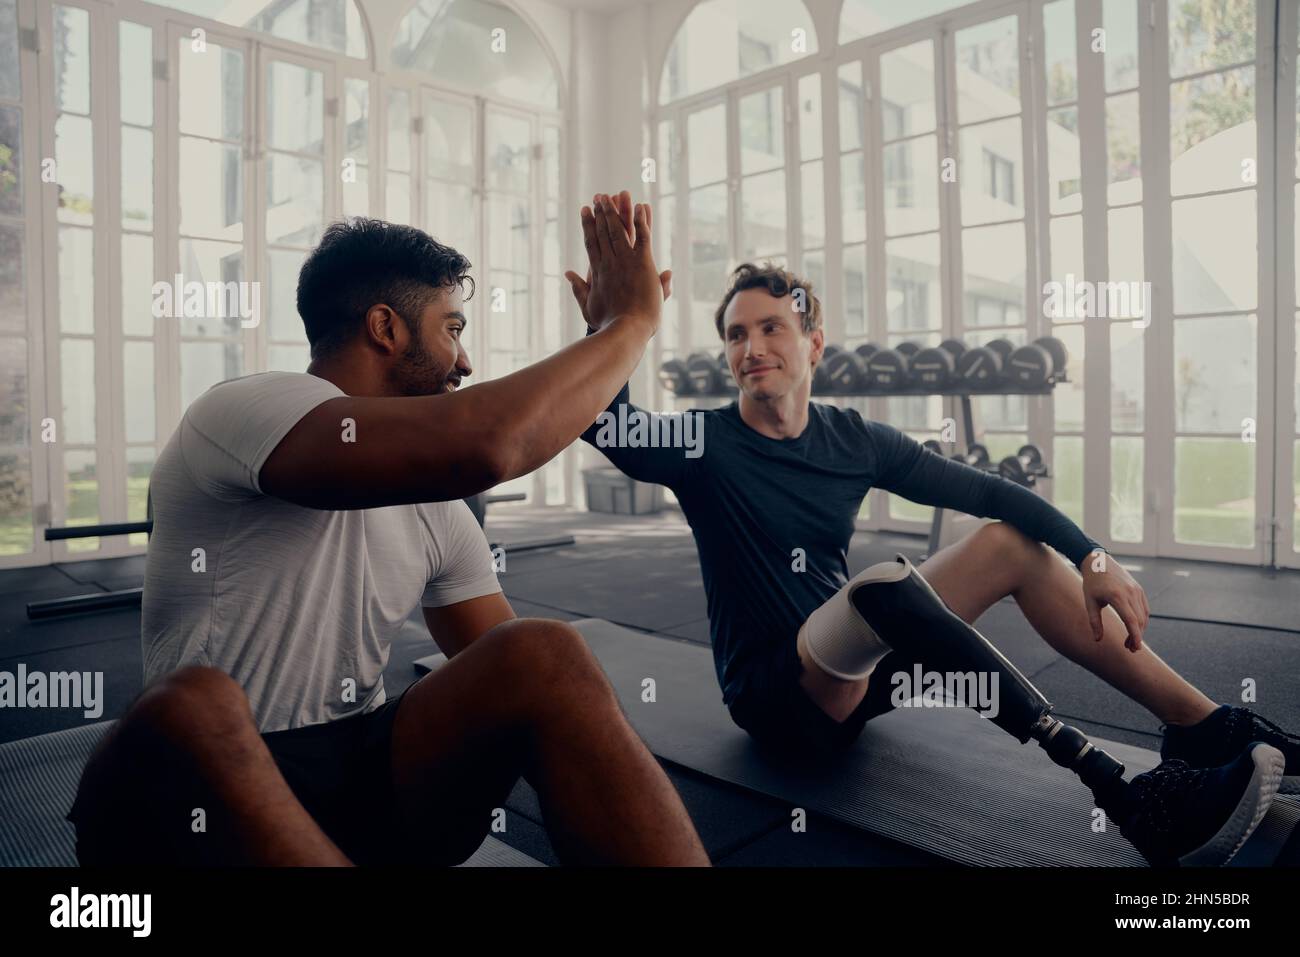 Deux amis s'entraîner dans la salle de gym - un avec une prothèse . Deux hommes de haut en train de se dépenser dans la salle de gym après une bonne séance d'entraînement Banque D'Images